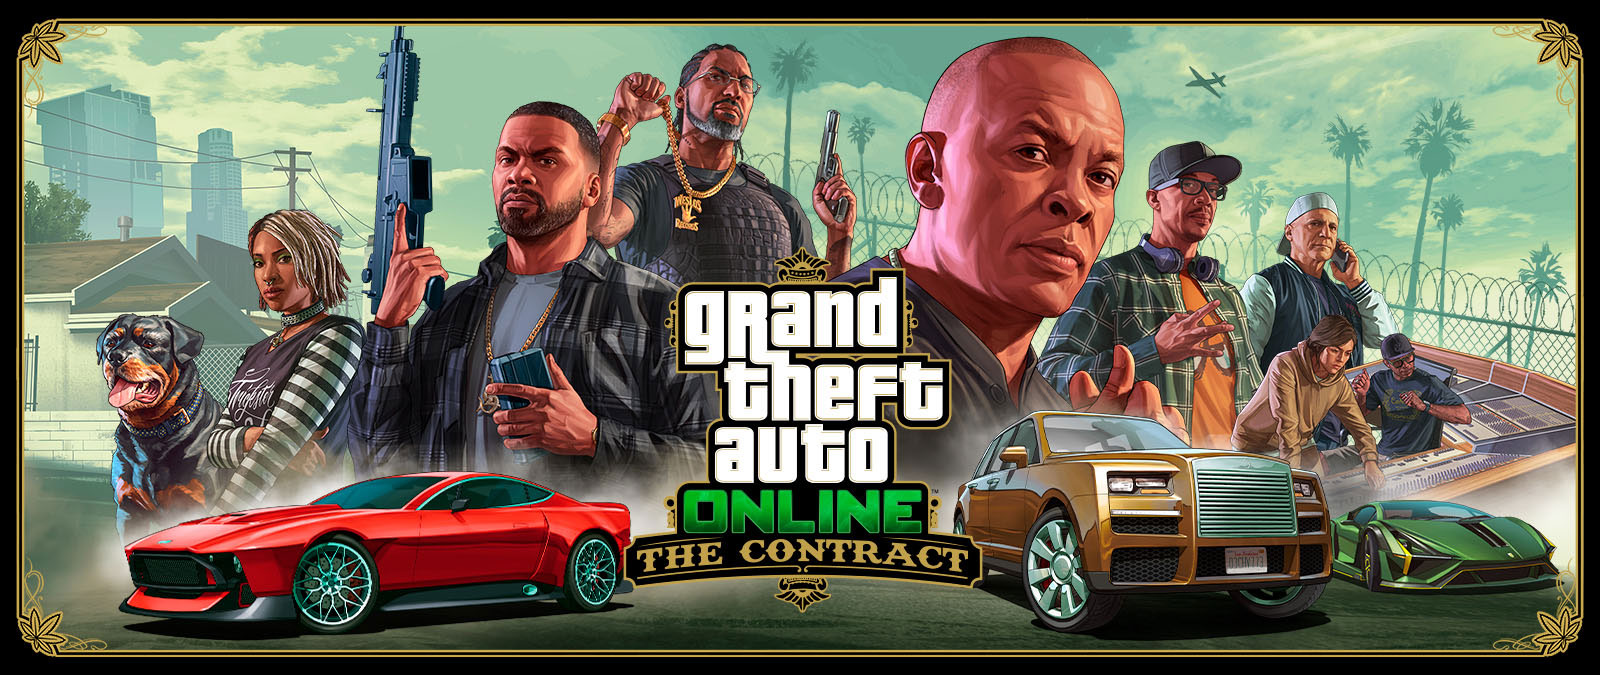 Grand Theft Auto Online, The Contract, Franklin, yedi diğer arkadaş ve köpek Chop üç egzotik arabanın arkasında sıralanmış. 